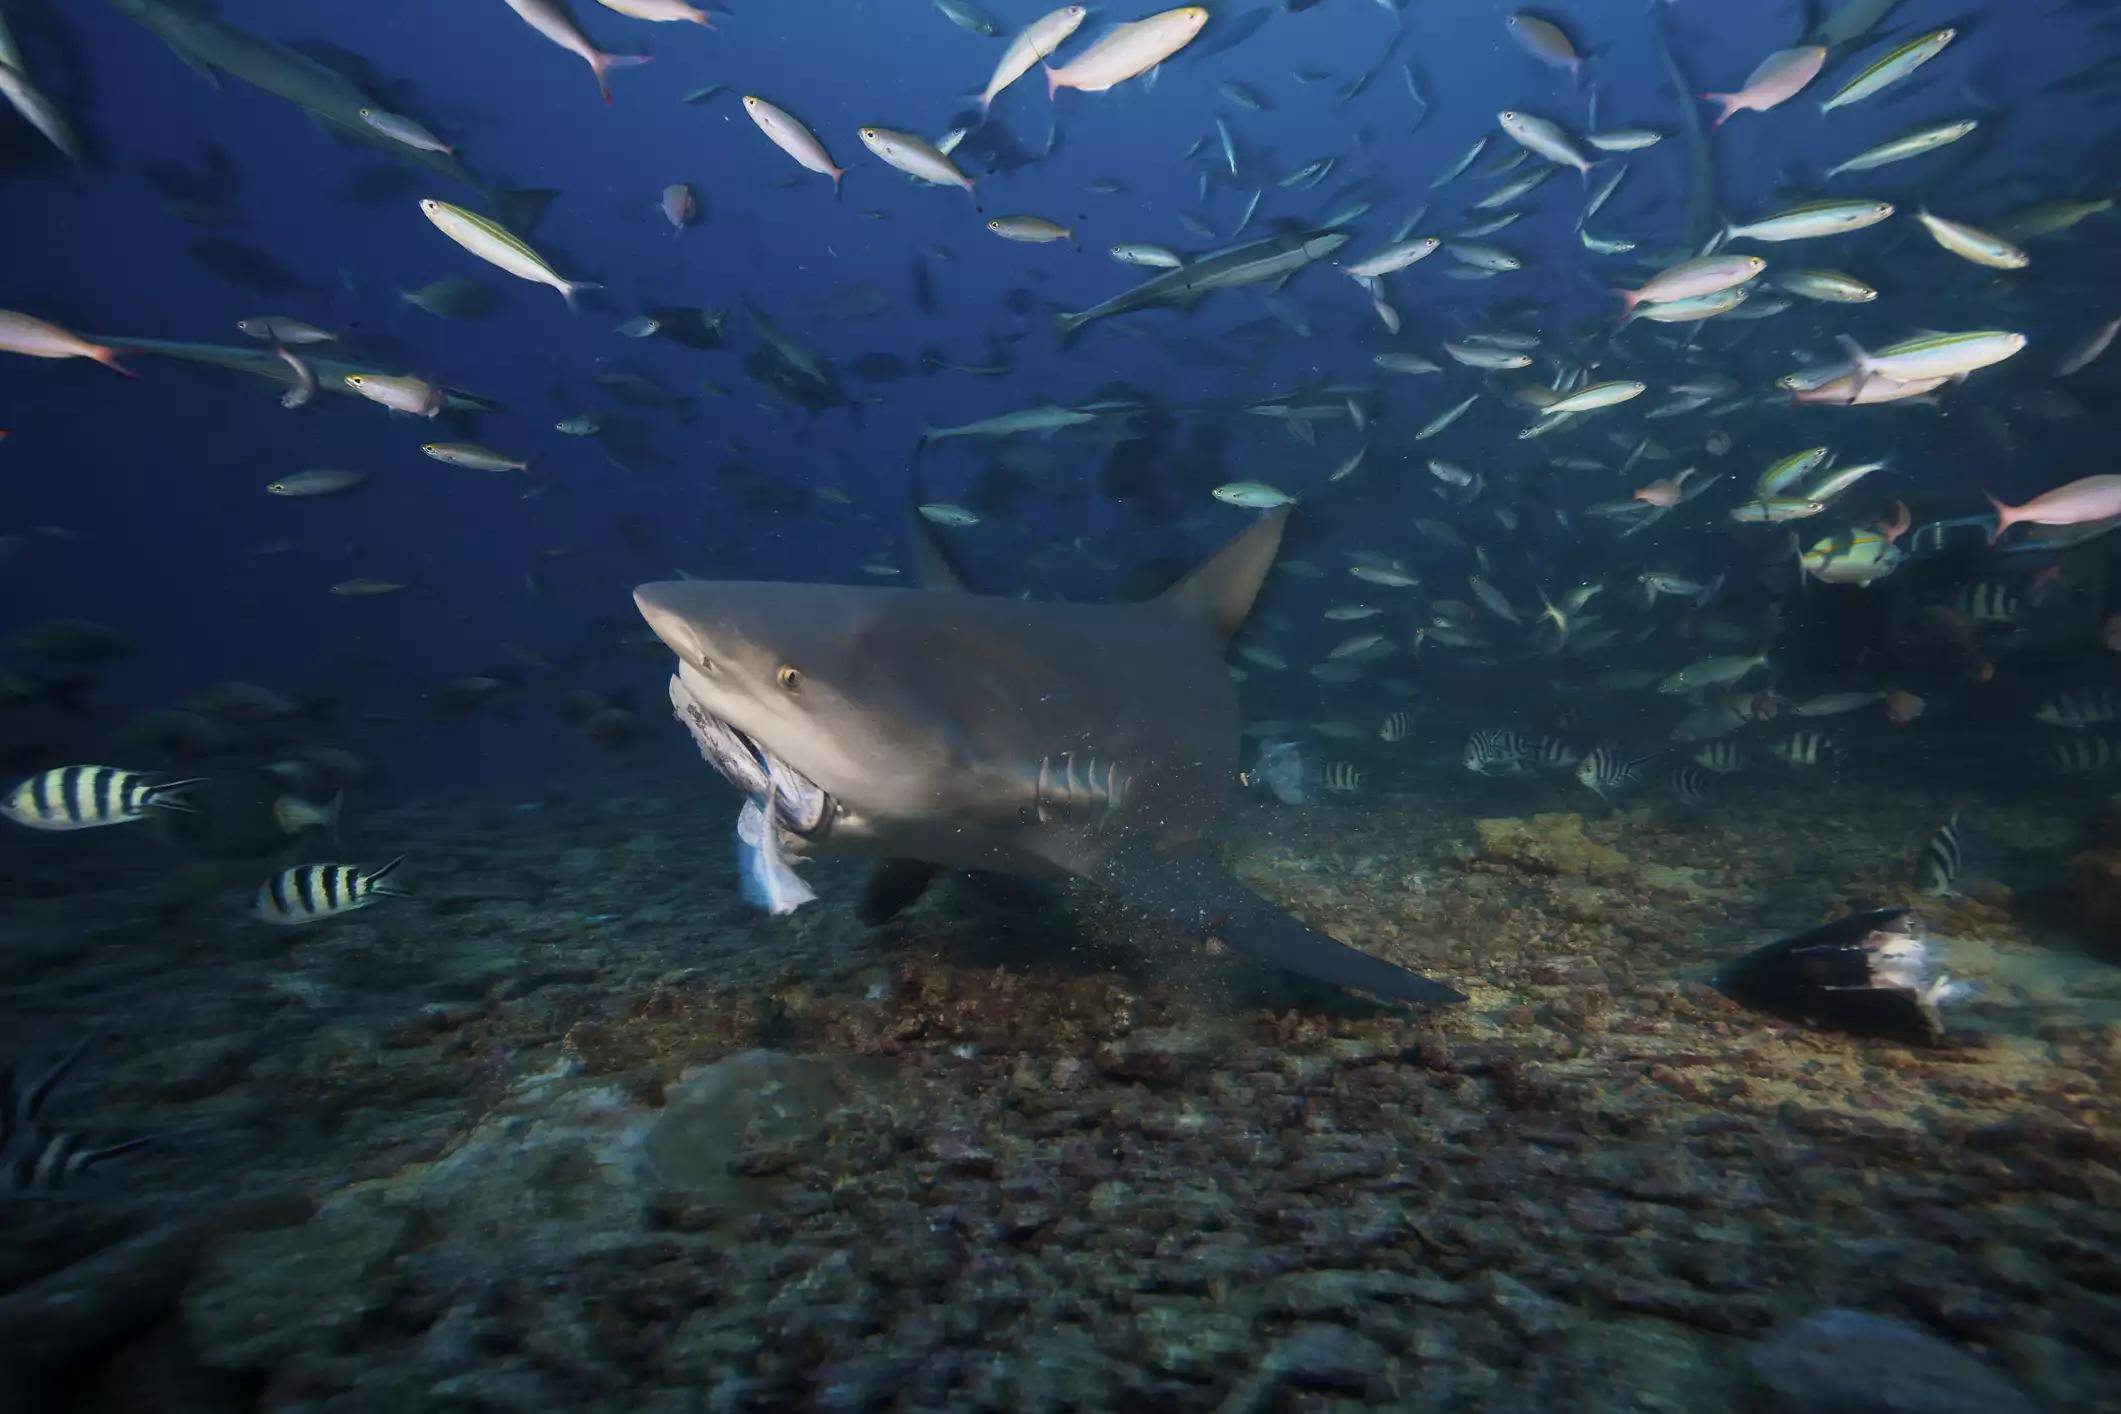 灰鲭鲨百科-灰鲭鲨天敌|图片-排行榜123网